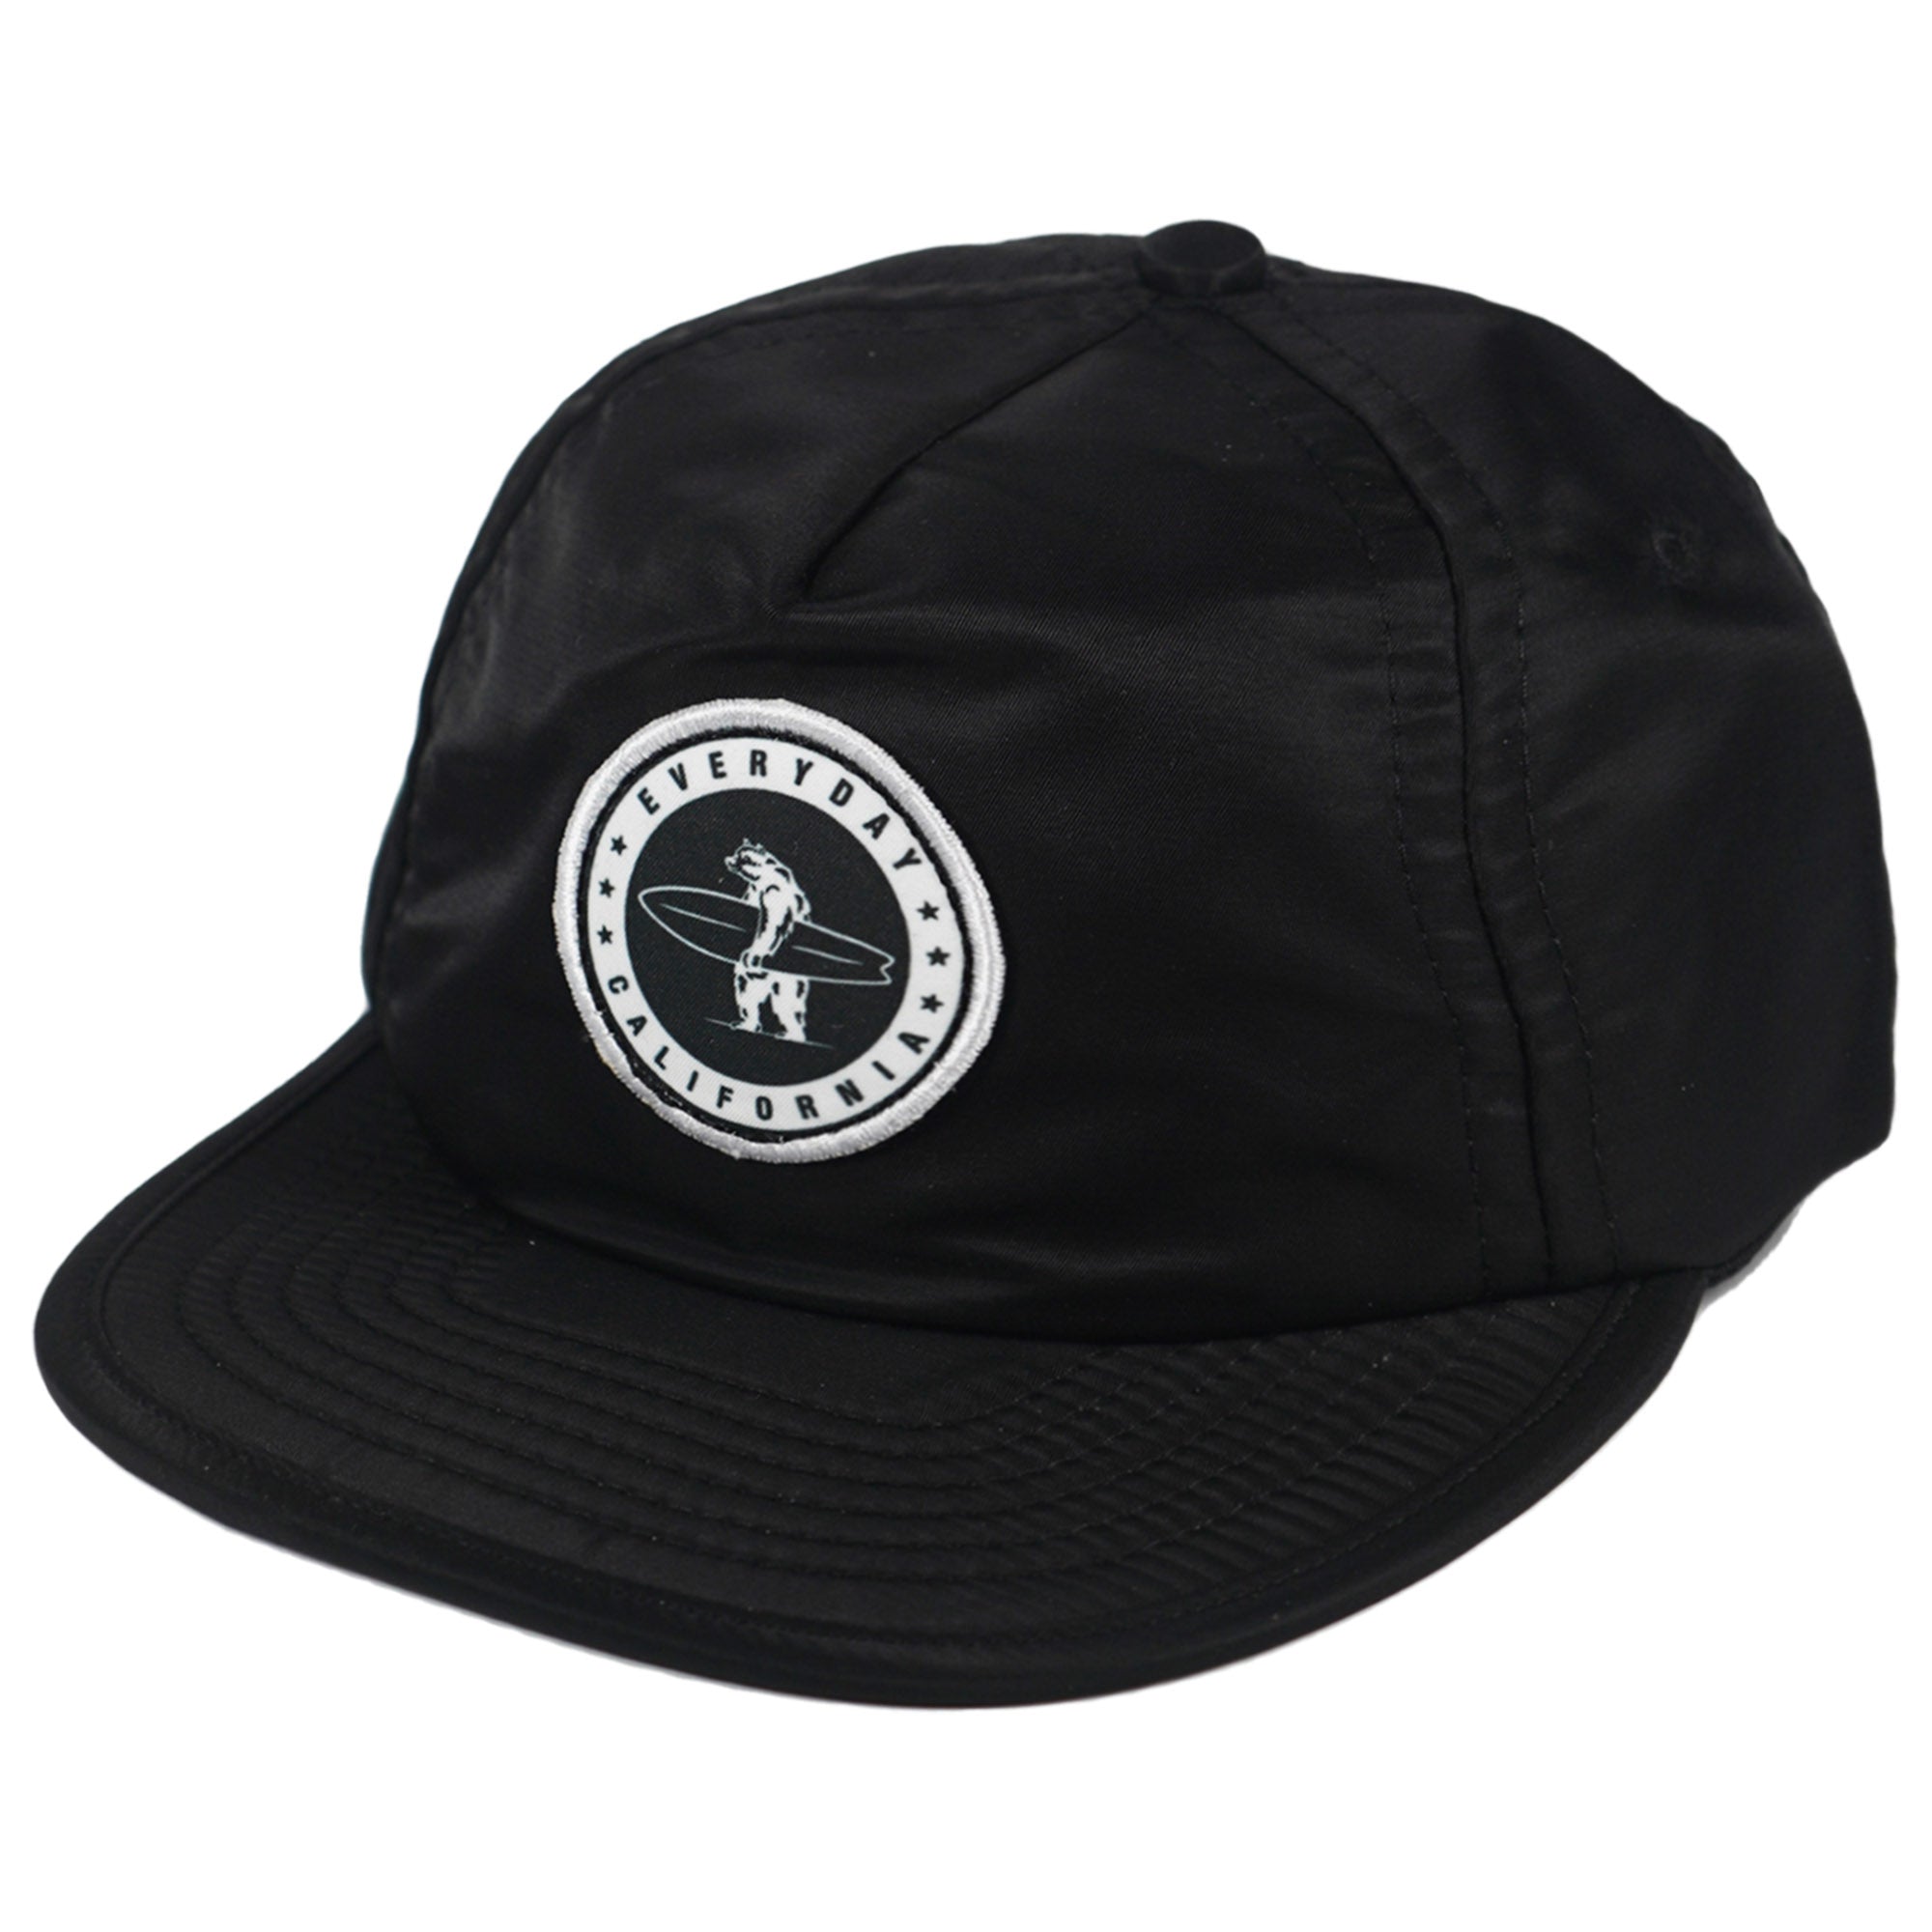 Everyday California Kid's Waterproof Snapback Hat Black